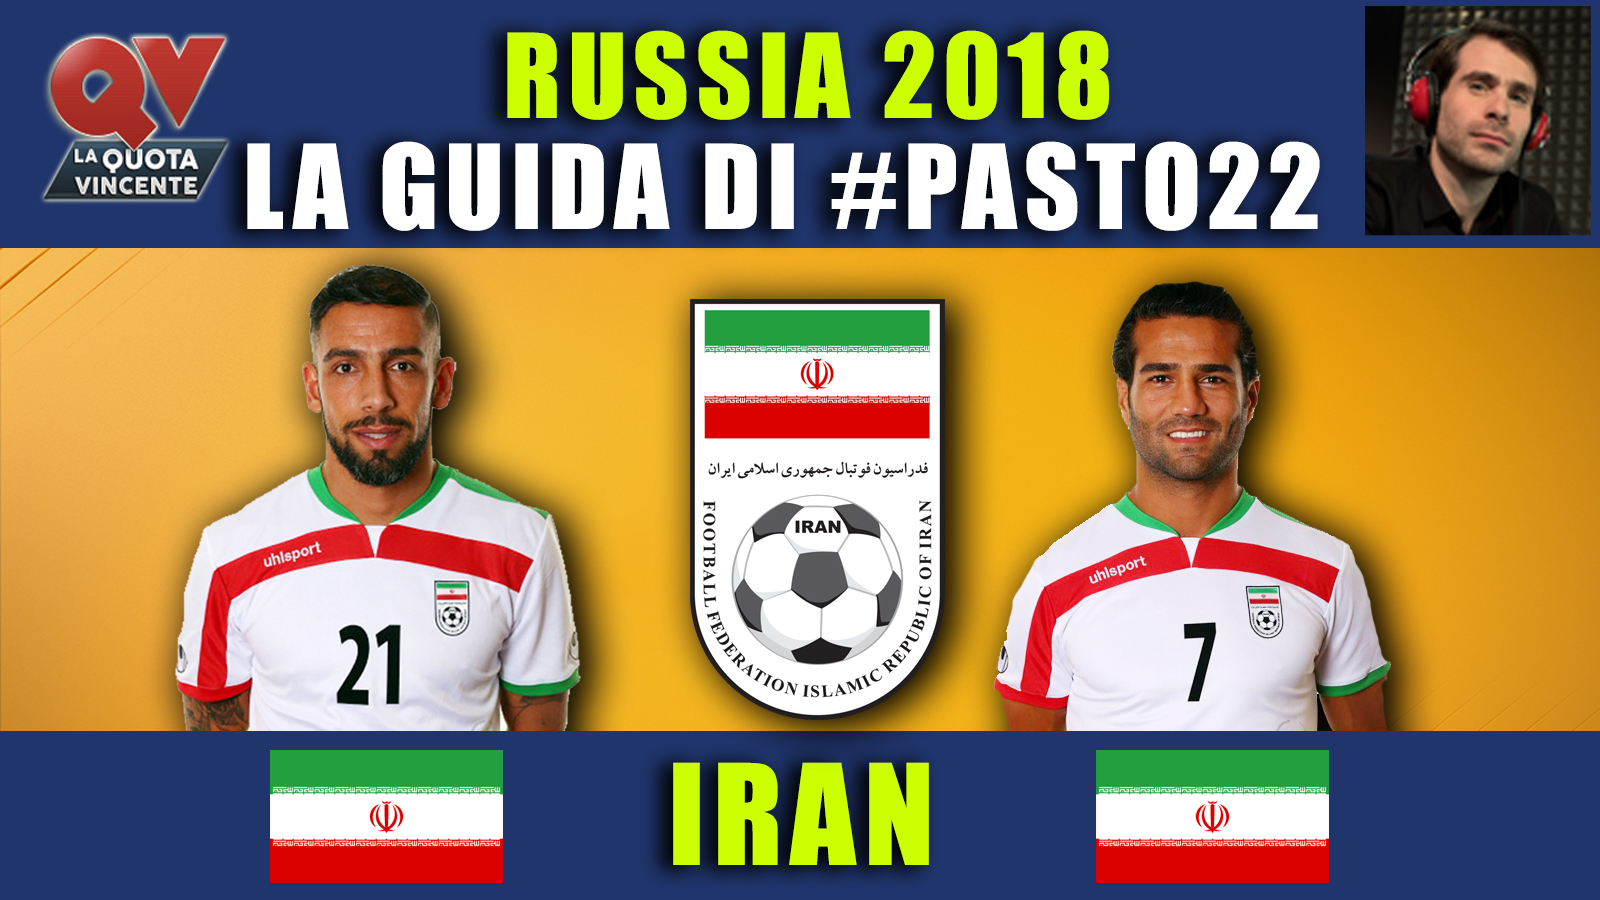 Guida Mondiali Russia 2018 Iran